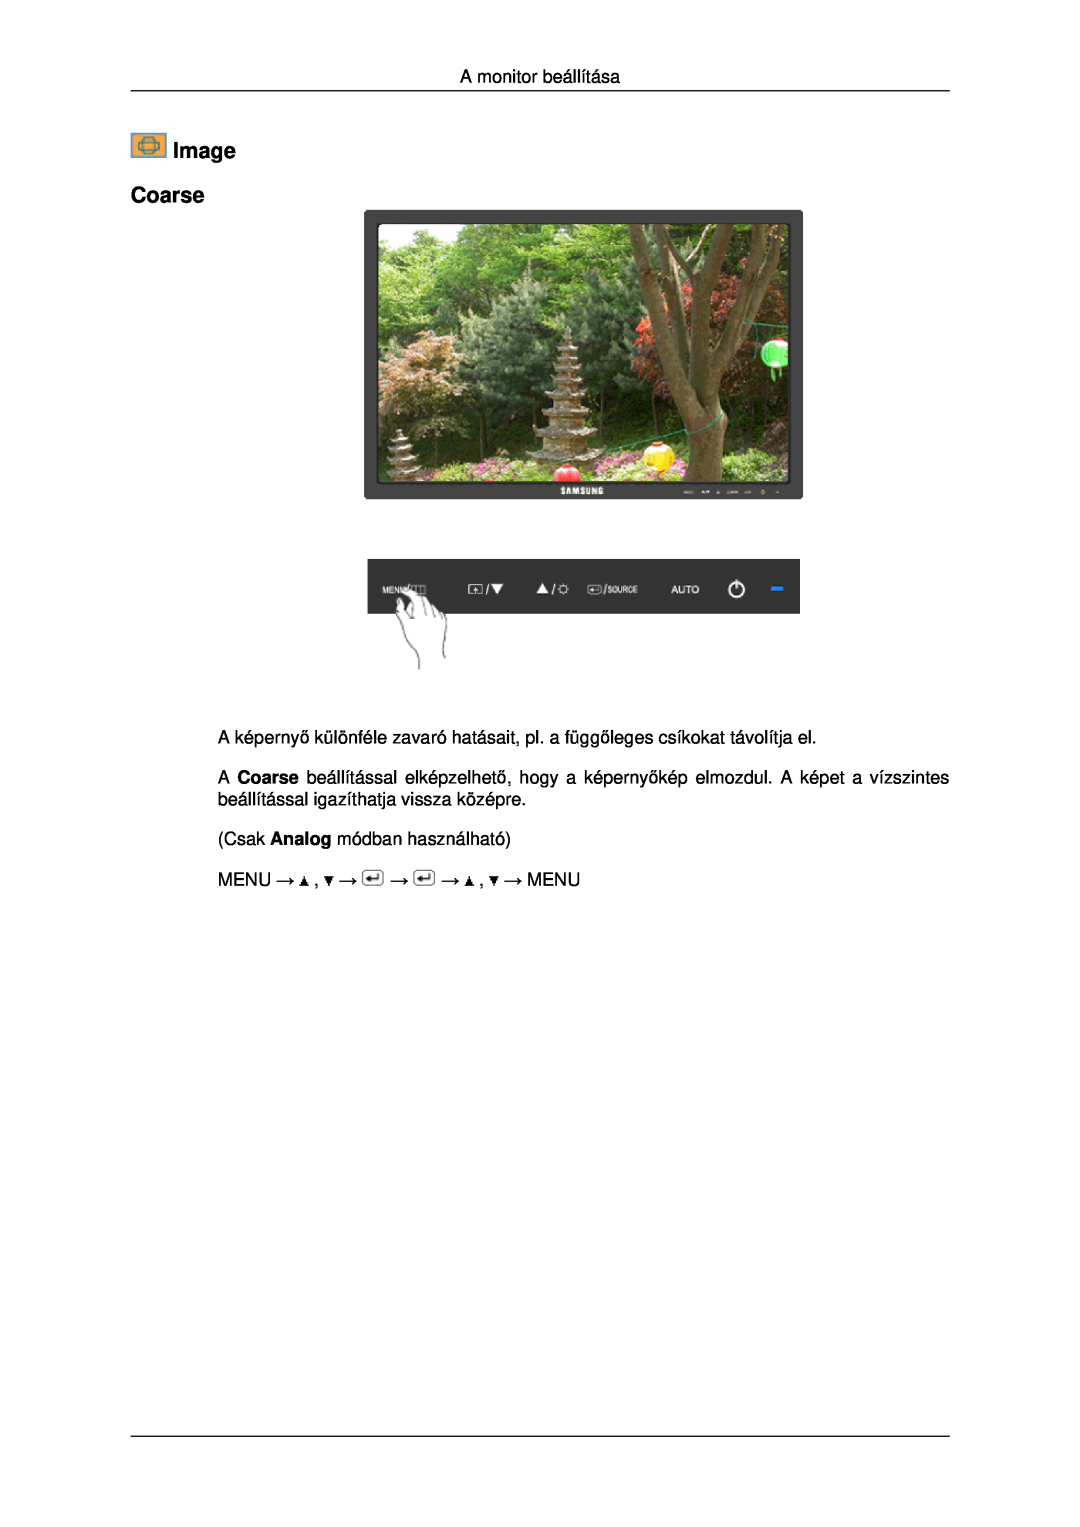 Samsung LS22MYDESCA/EN manual Image Coarse, A monitor beállítása, Csak Analog módban használható MENU → , → → → , → MENU 